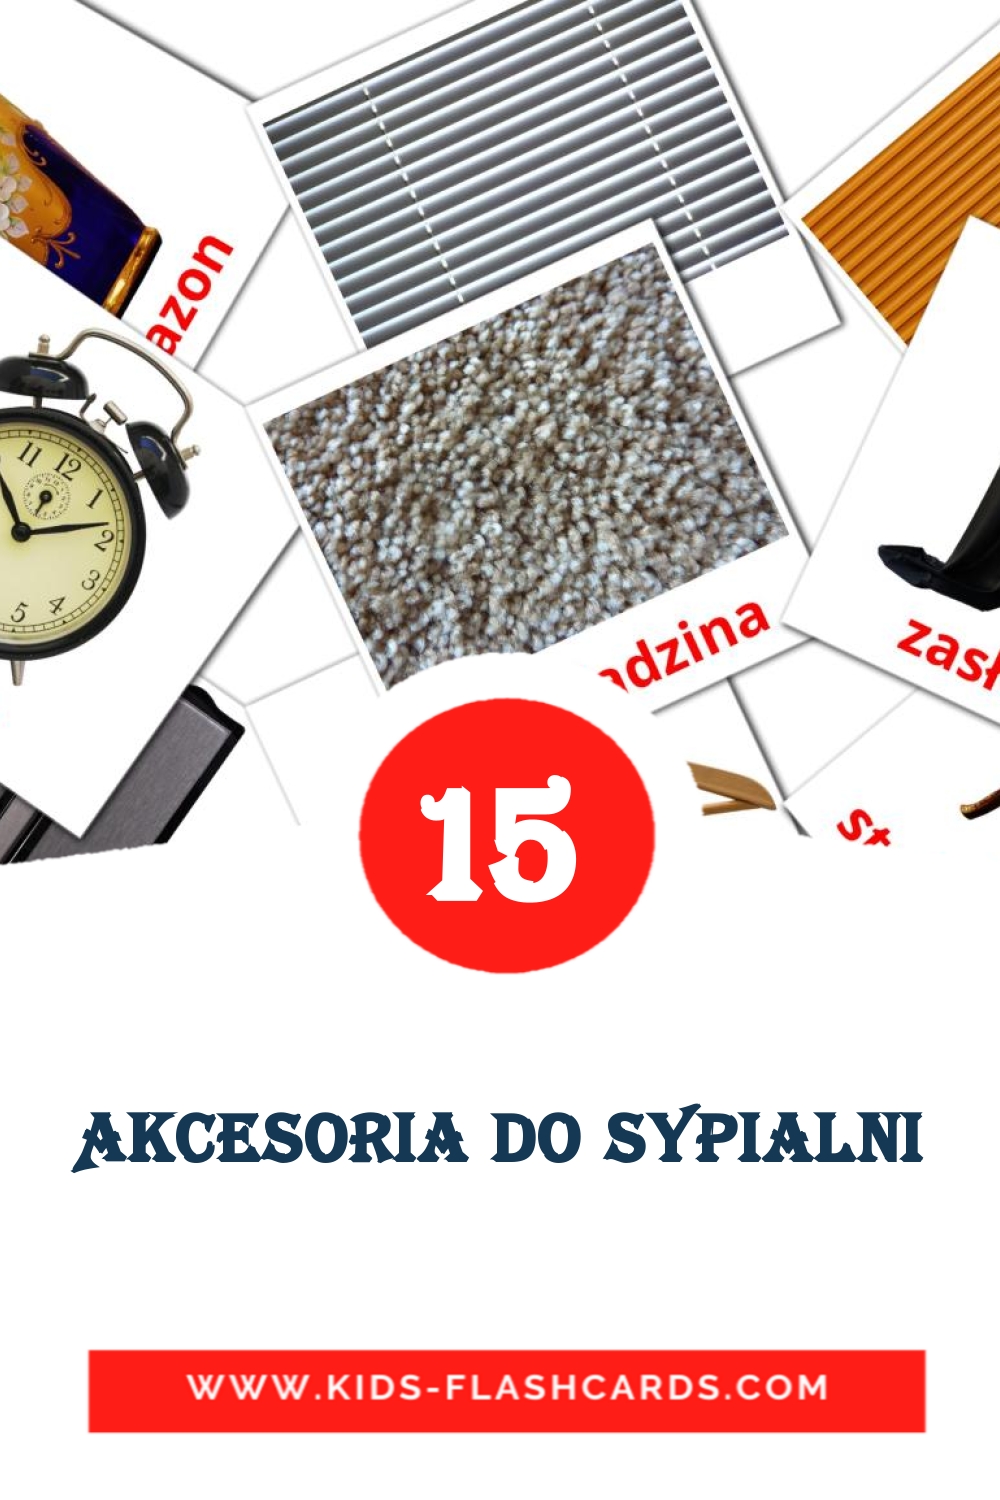 15 Akcesoria do Sypialni fotokaarten voor kleuters in het polish